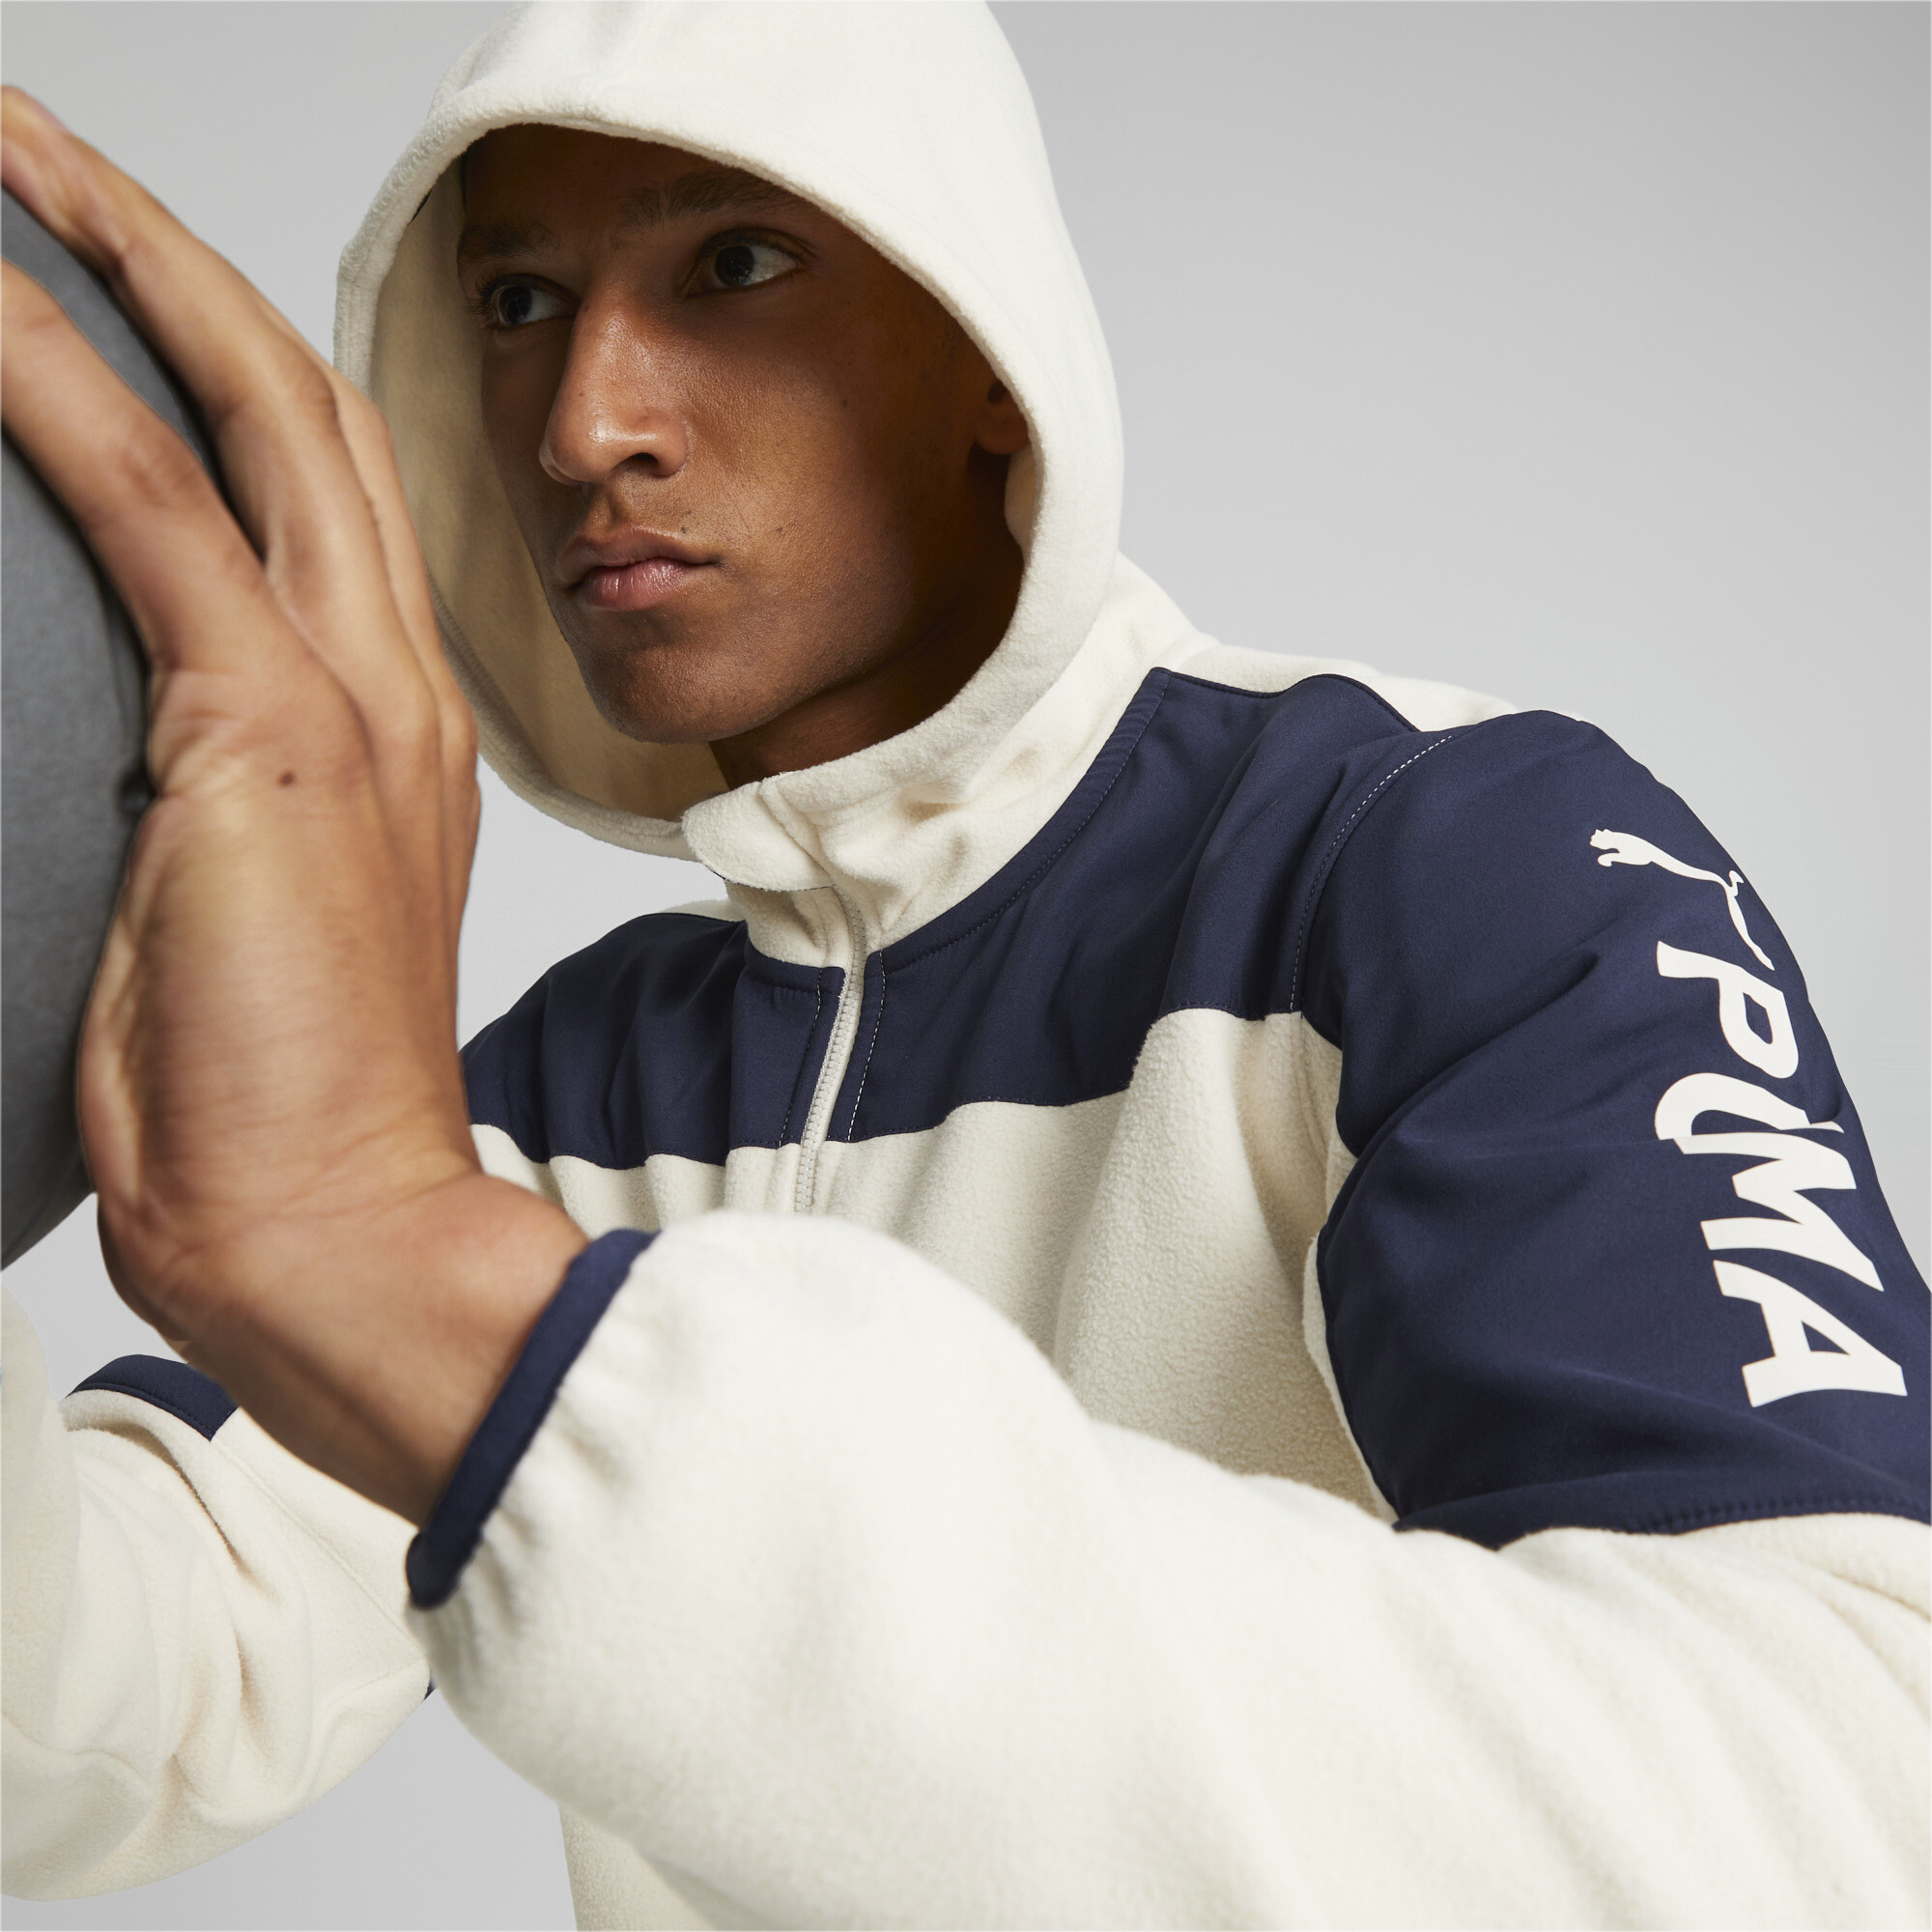 Men's Puma Fit's Hybrid Jacket, White, Size S, Clothing